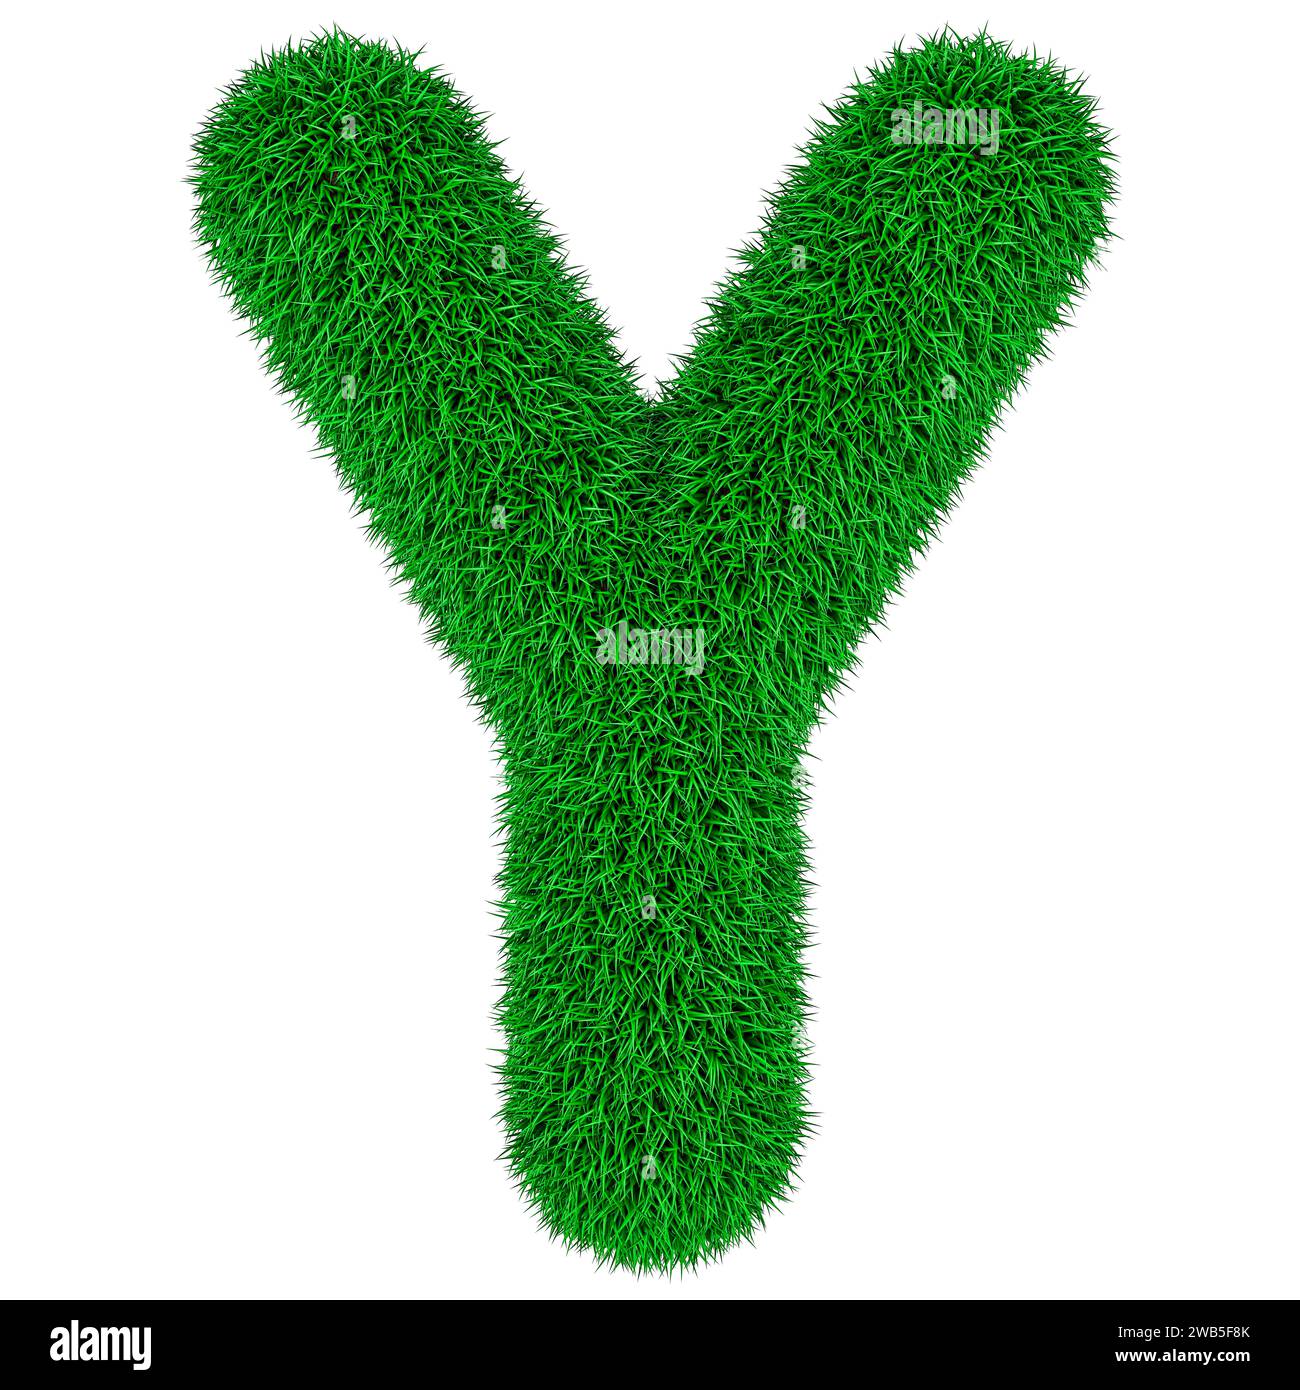 Vert herbe lettre y, rendu 3D isolé sur fond blanc Banque D'Images